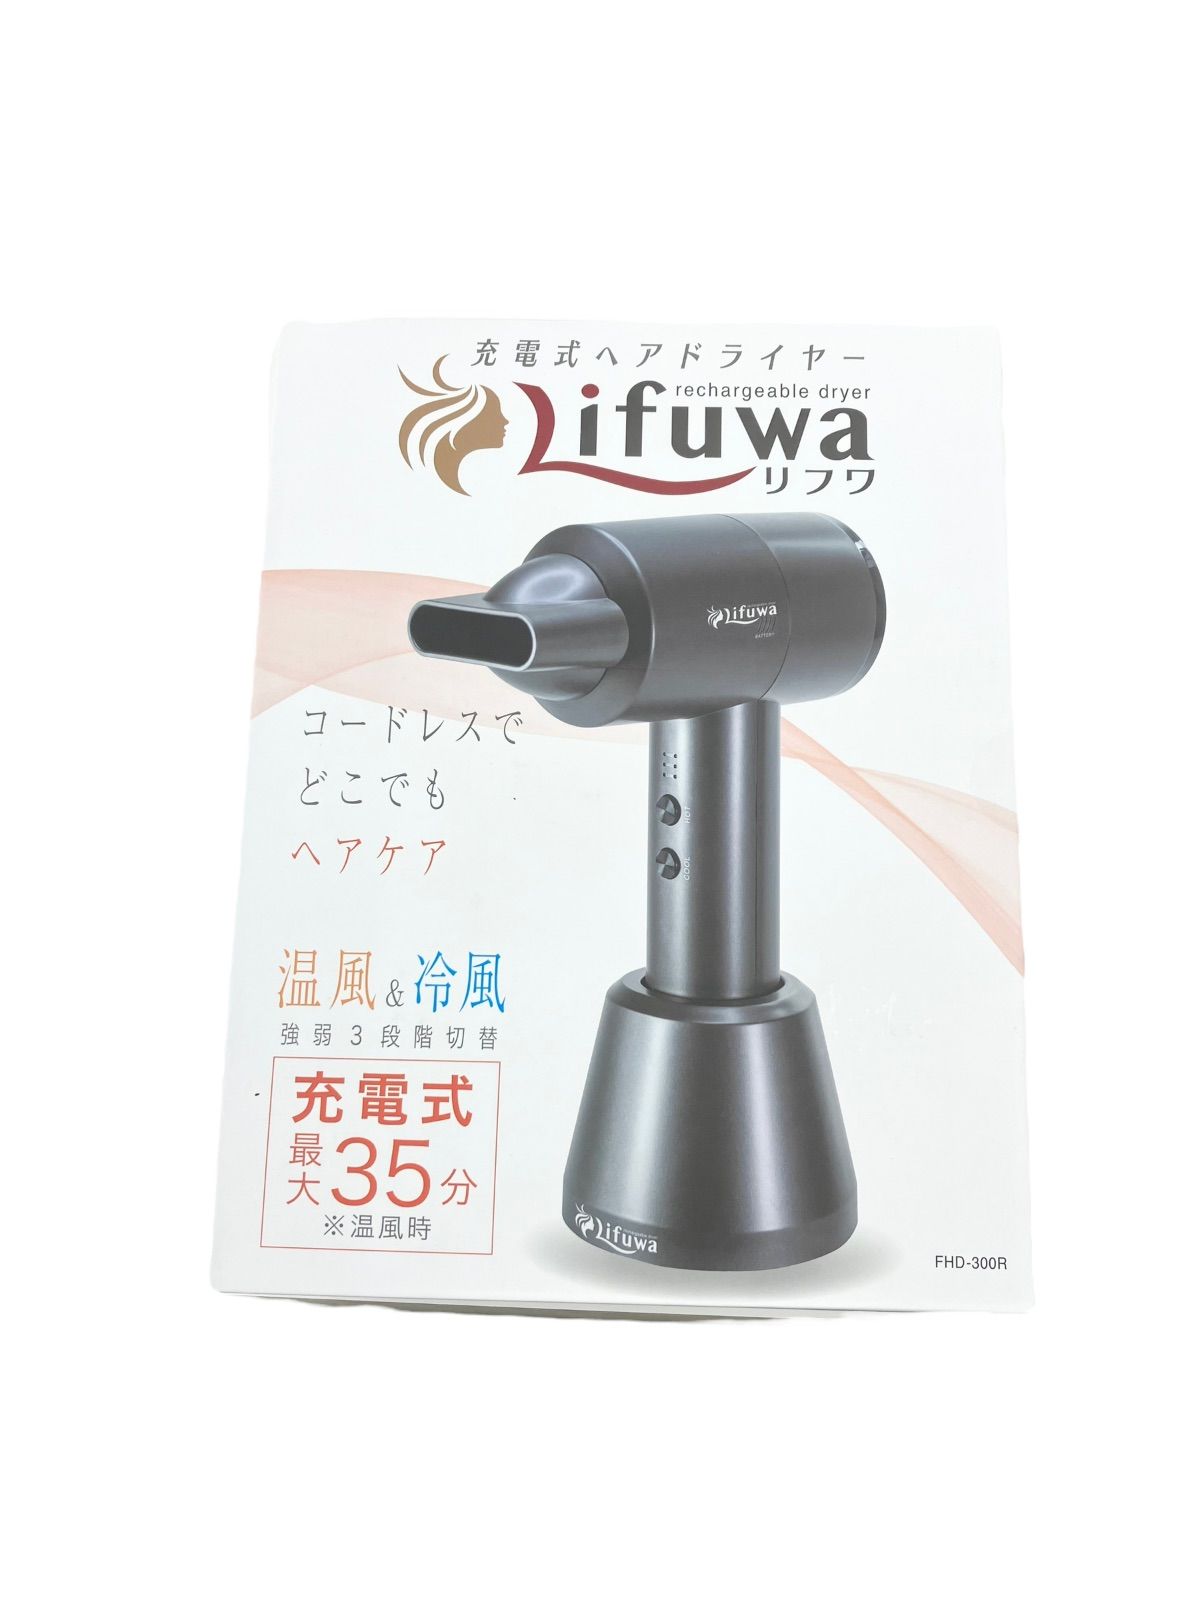 ☆Lifuwa 充電式 コードレスドライヤー FHD-300R☆ - ヘアドライヤー